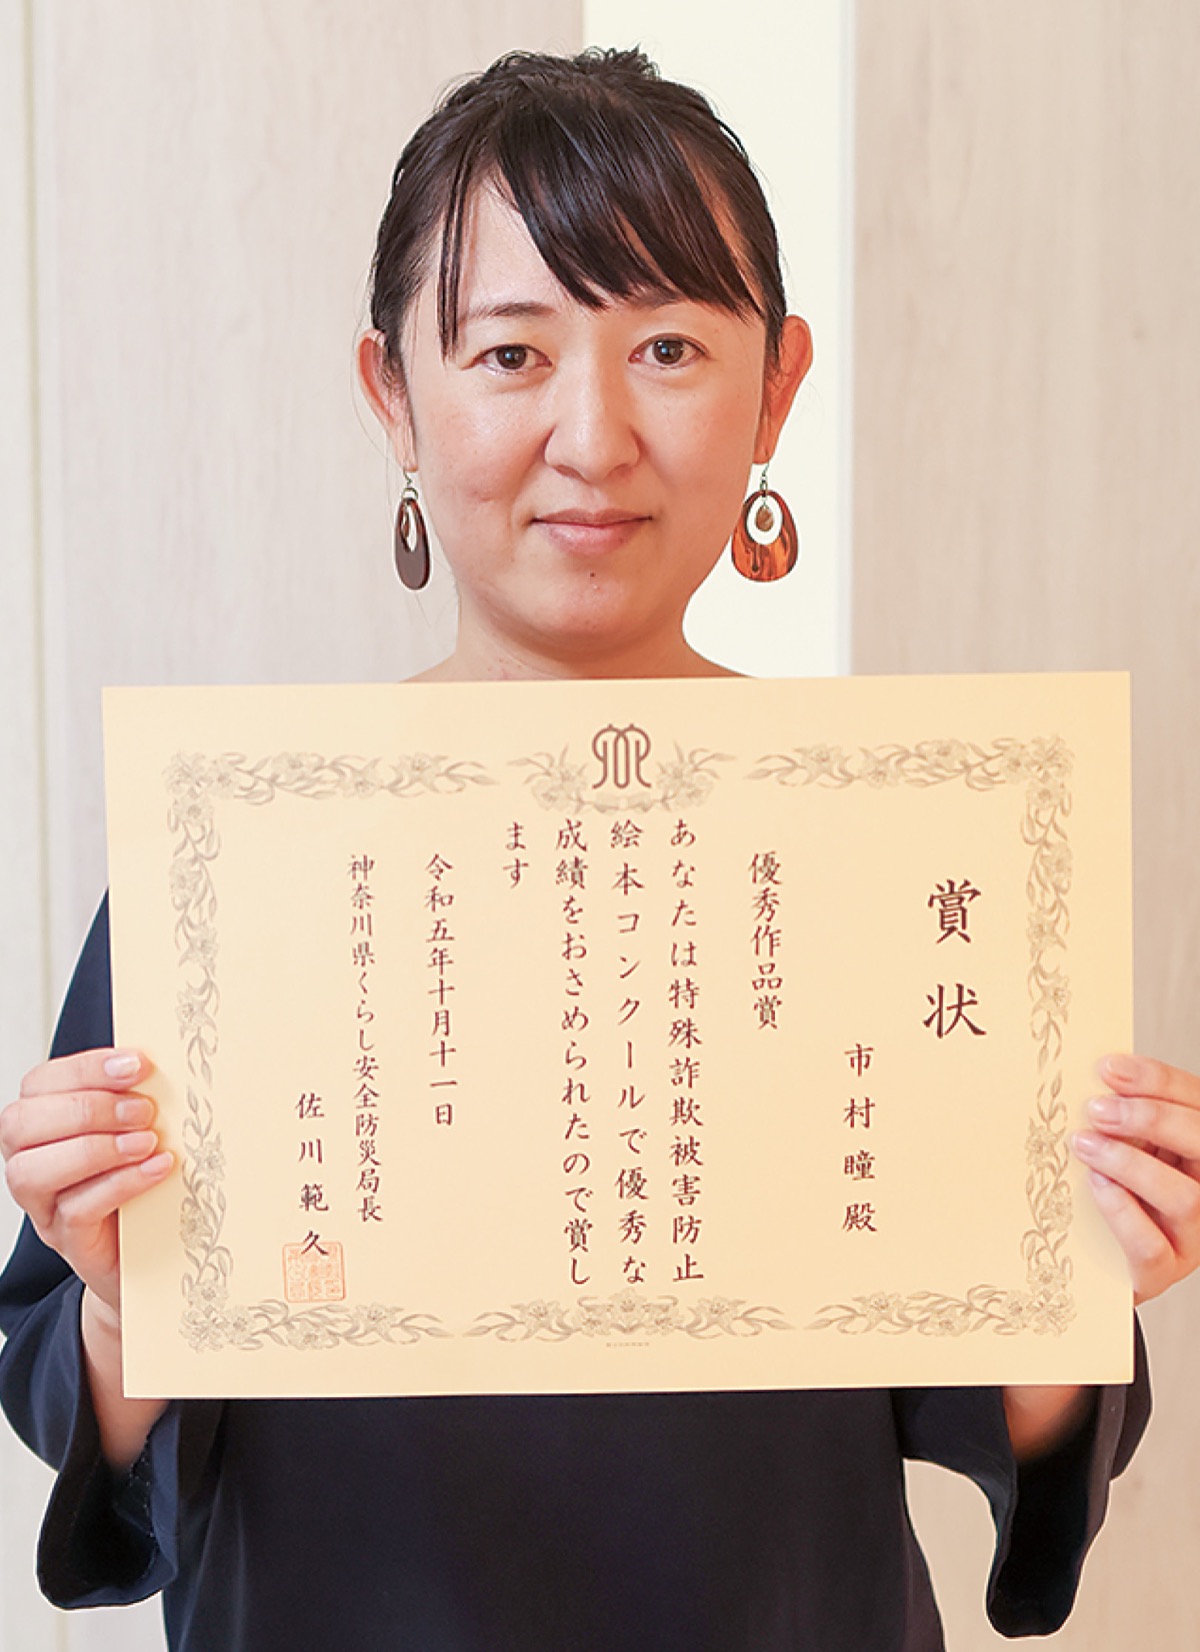 県絵本コンクール 市村さんが優秀賞を受賞 特殊詐欺防止テーマに | 泉